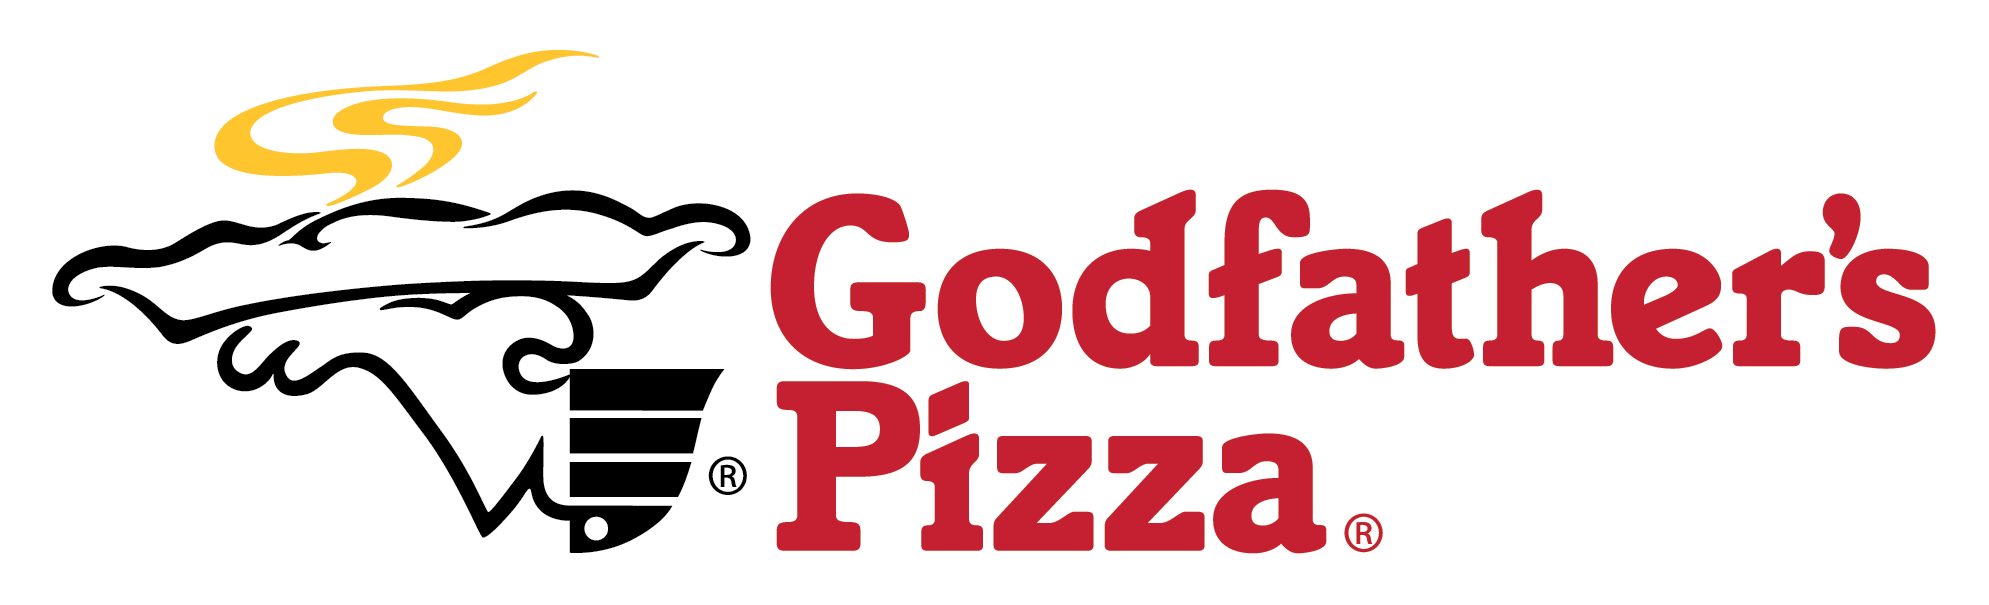 Godfathers pizza logo